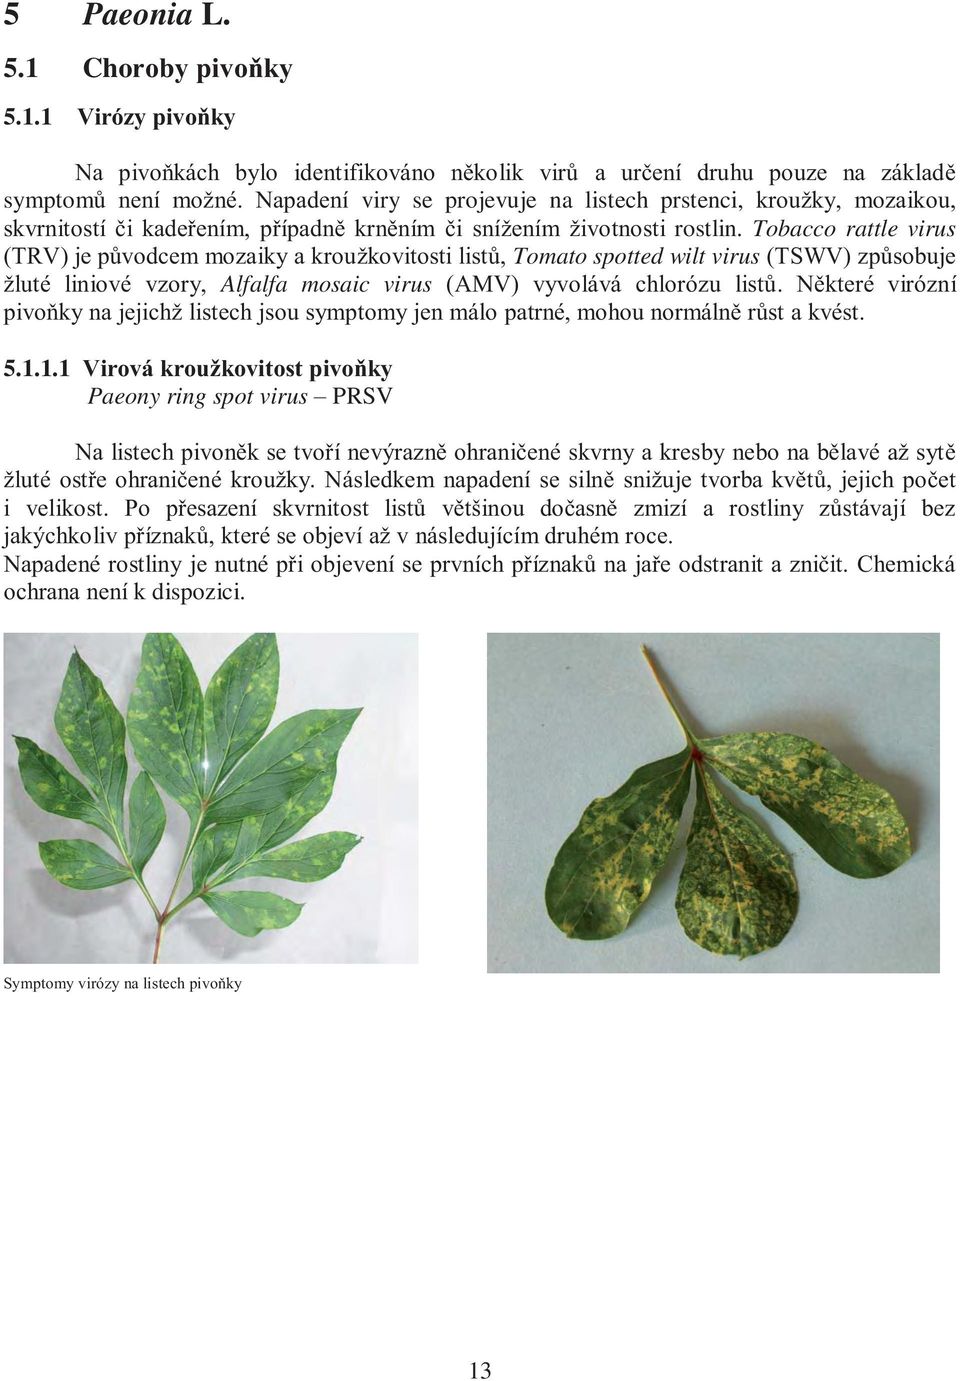 Tobacco rattle virus (TRV) je původcem mozaiky a kroužkovitosti listů, Tomato spotted wilt virus (TSWV) způsobuje žluté liniové vzory, Alfalfa mosaic virus (AMV) vyvolává chlorózu listů.